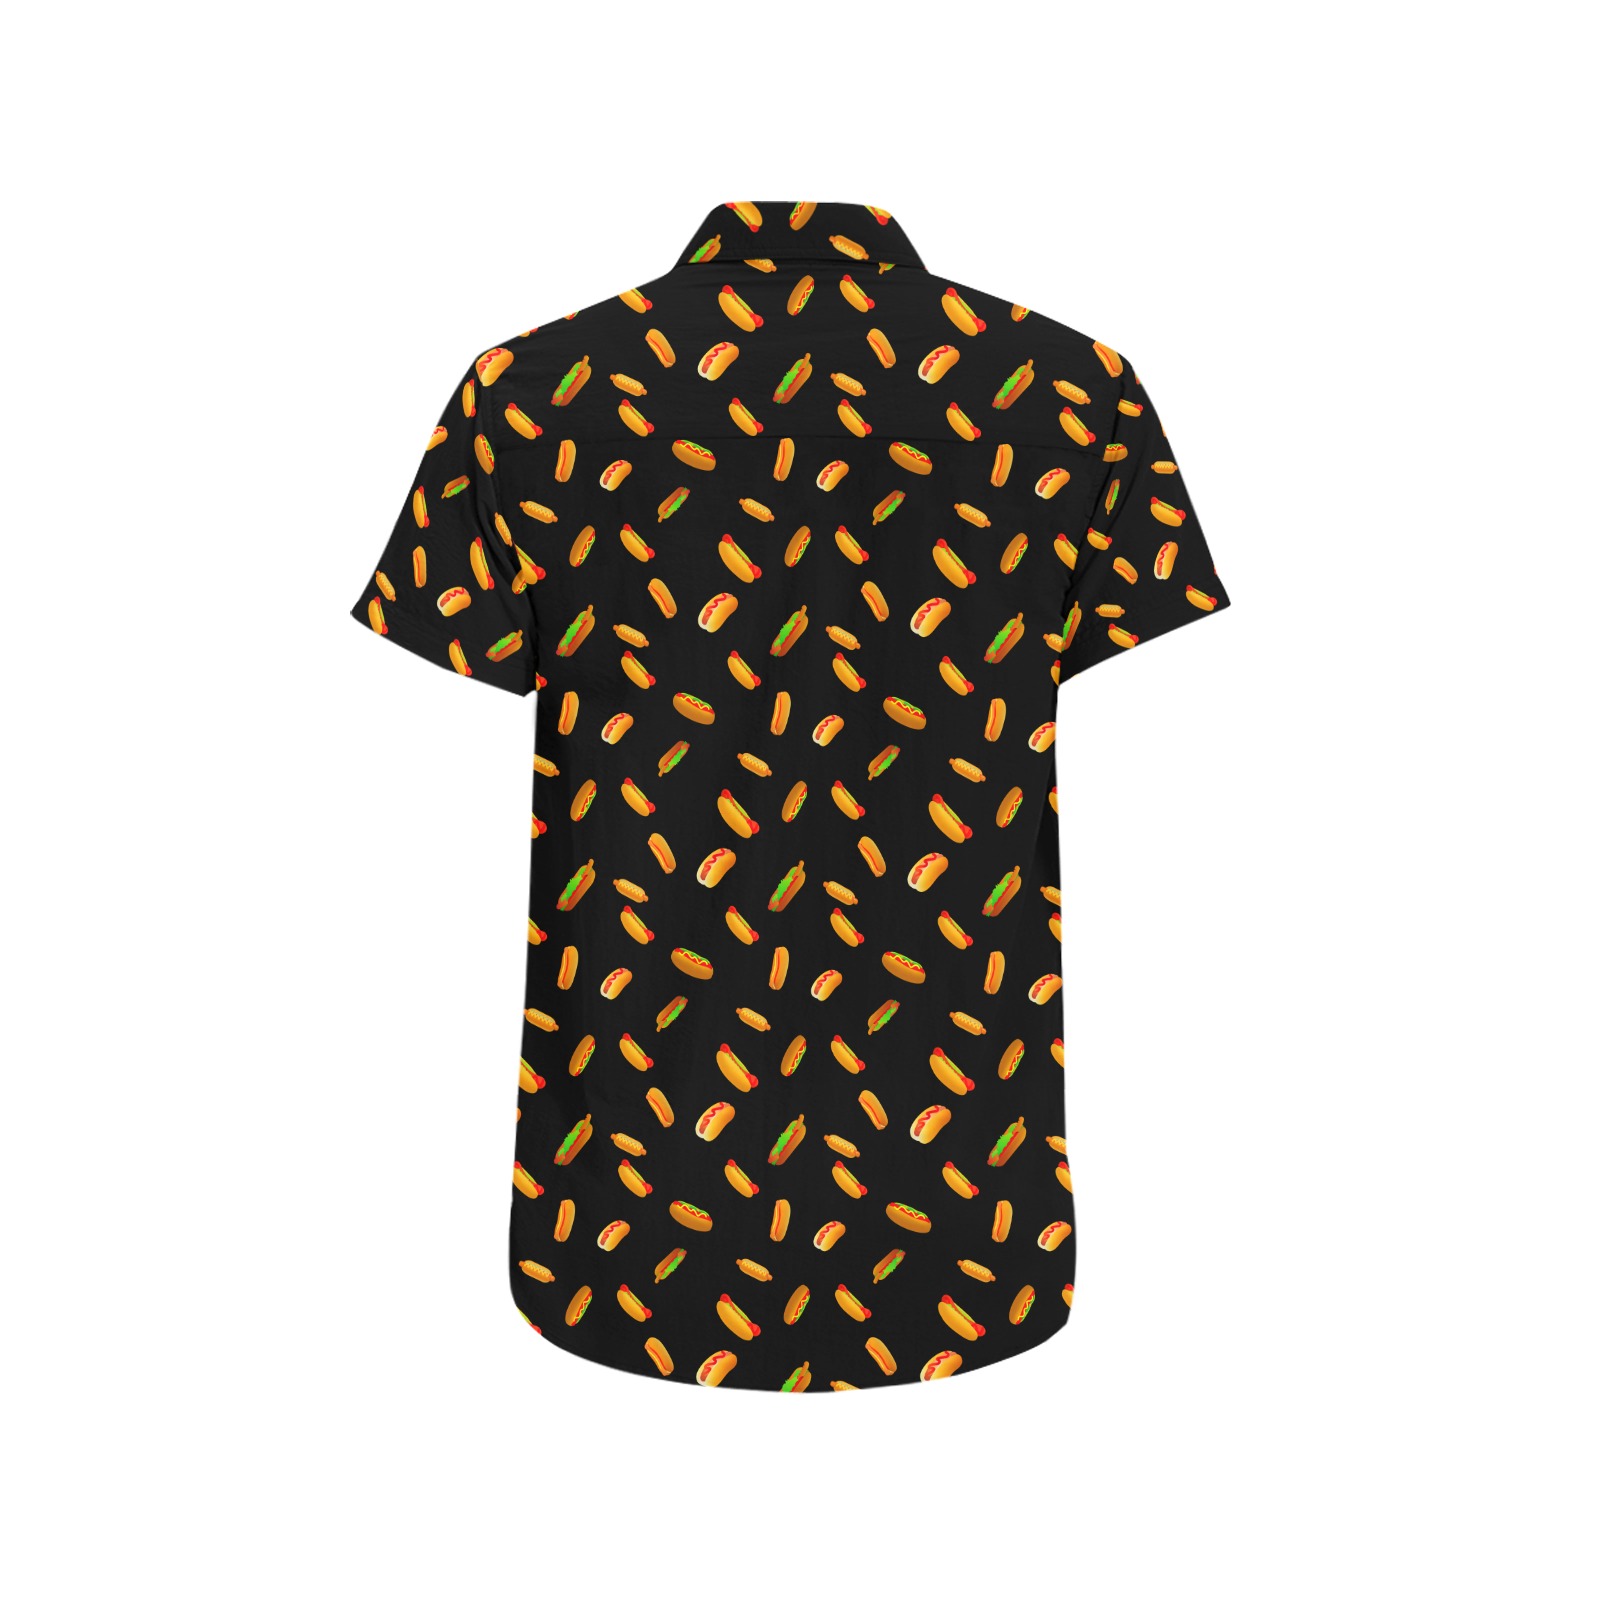 Hot Dog Pattern on Black Men's All Over Print Short Sleeve Shirt (Model T53)